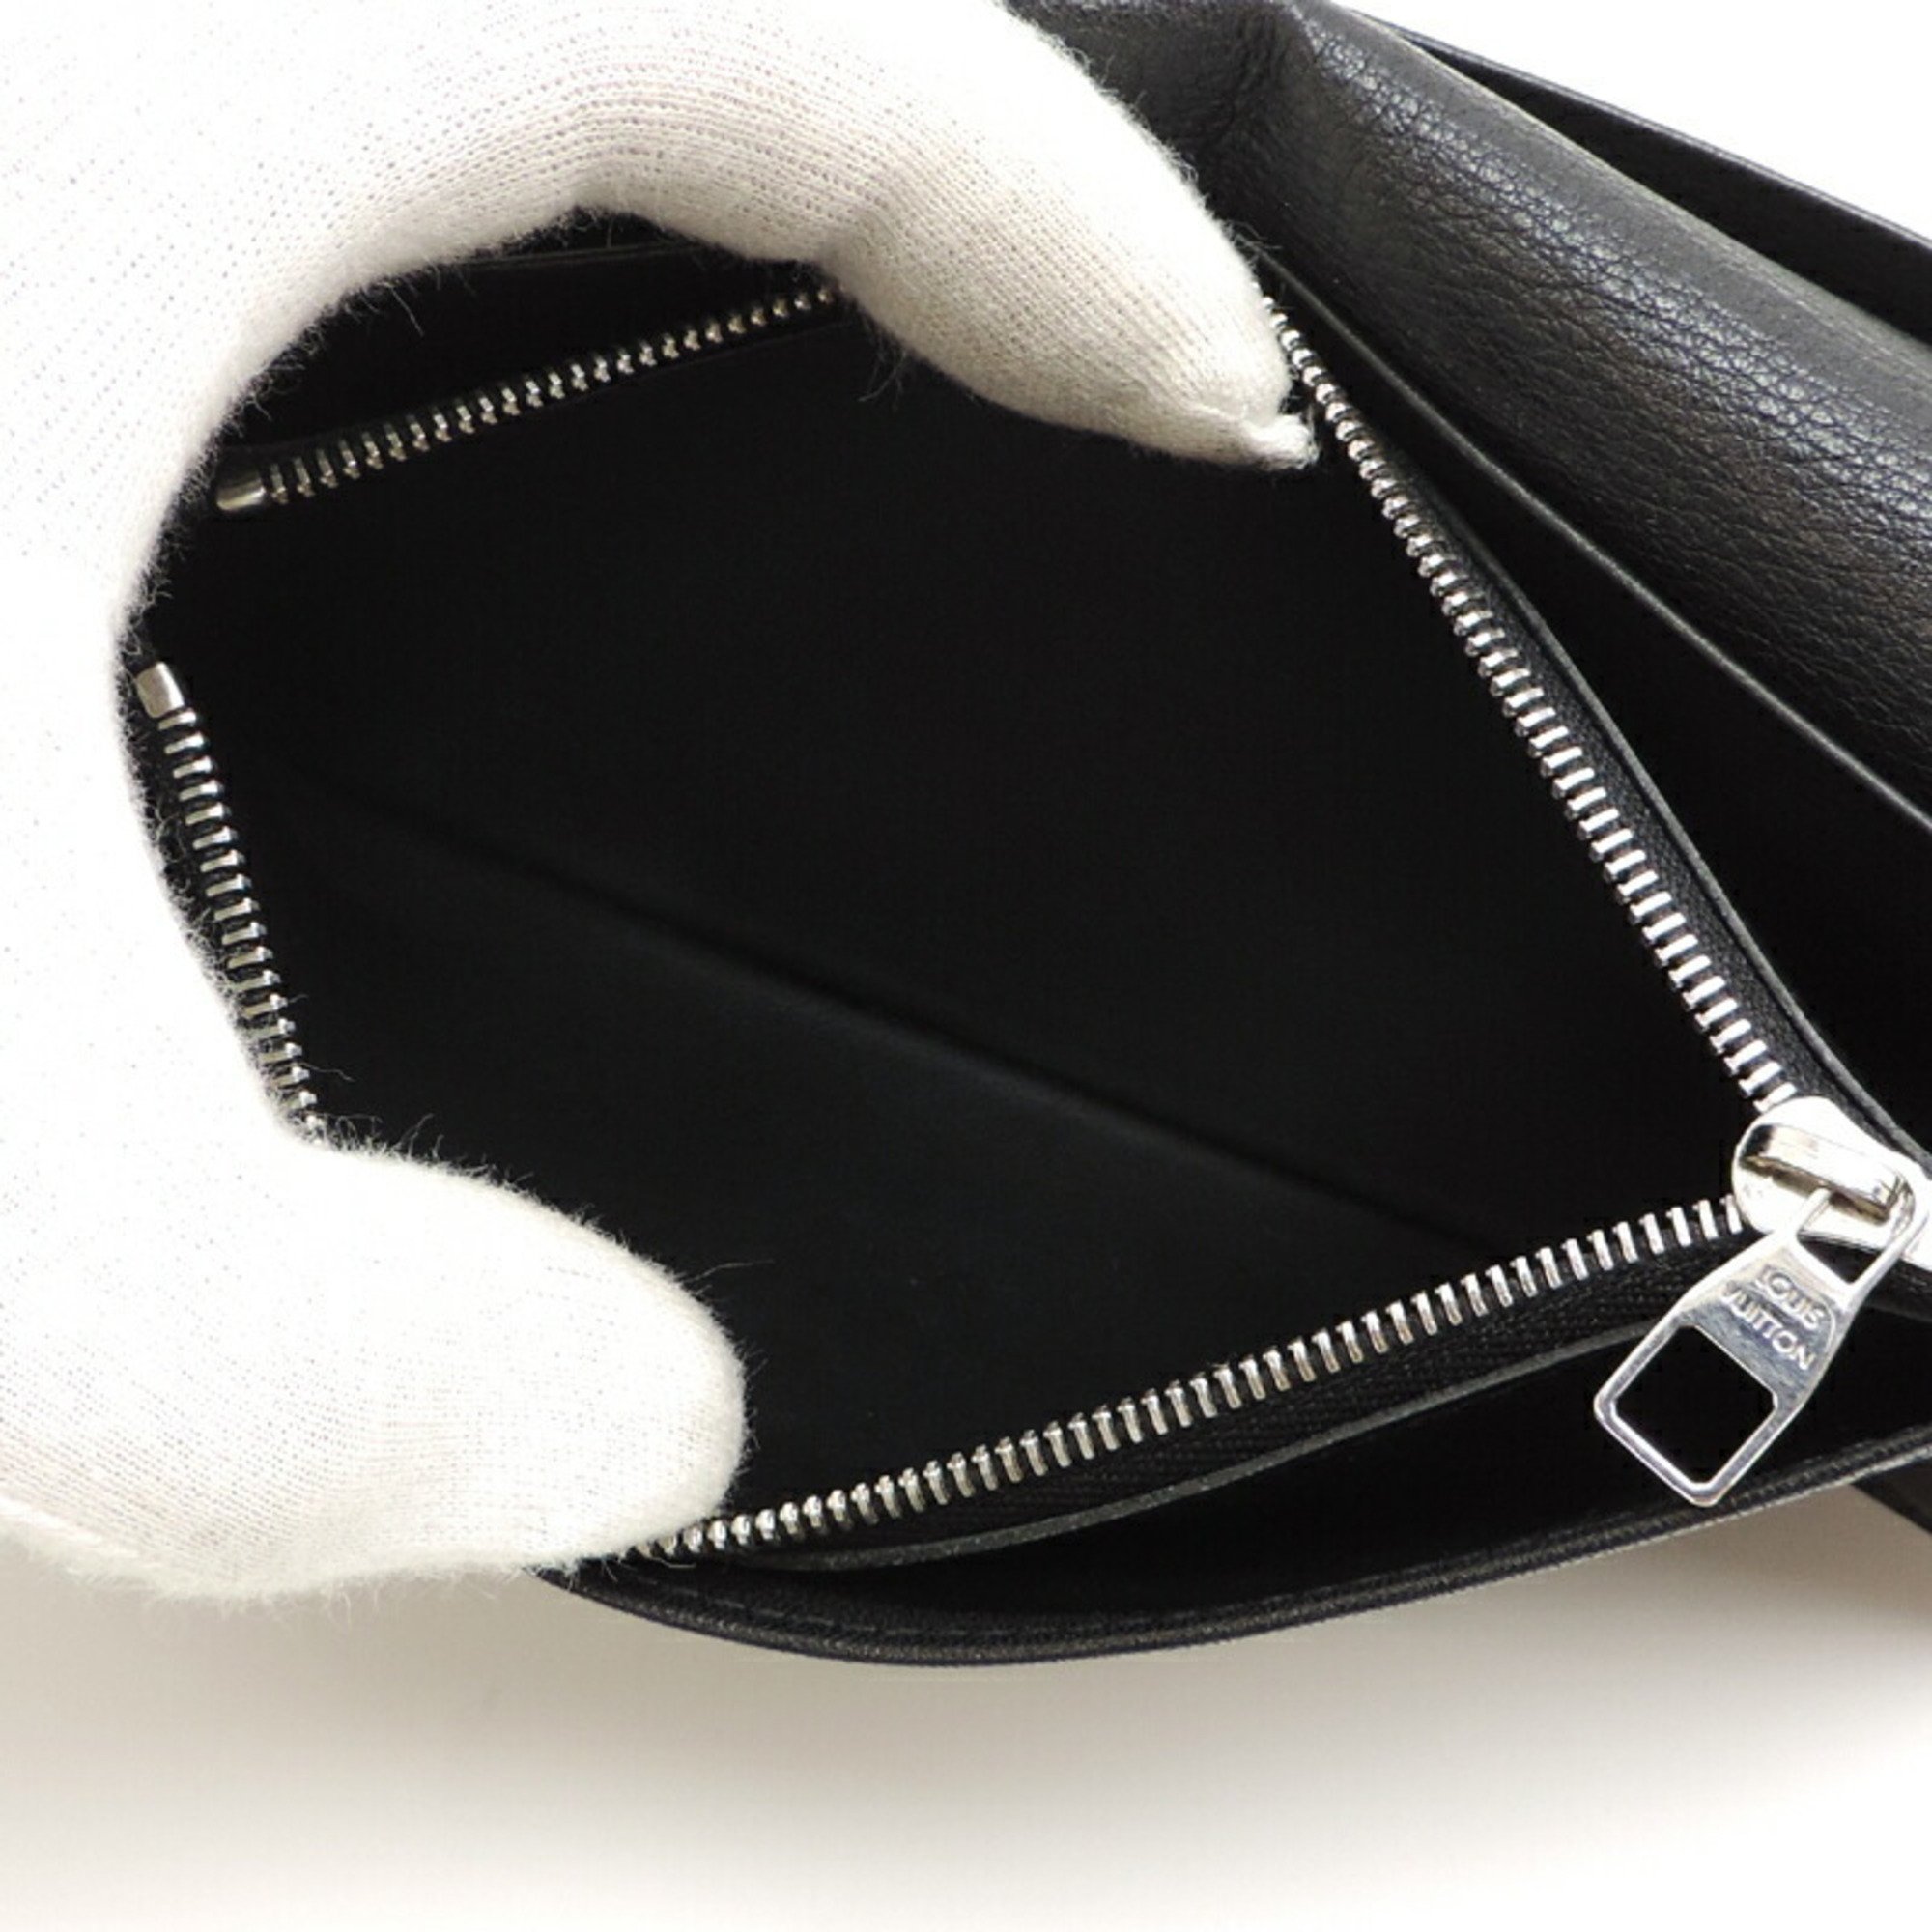 Louis Vuitton Portefeuille Brazza Men's Long Wallet M58192 Taurillon Noir (Black)